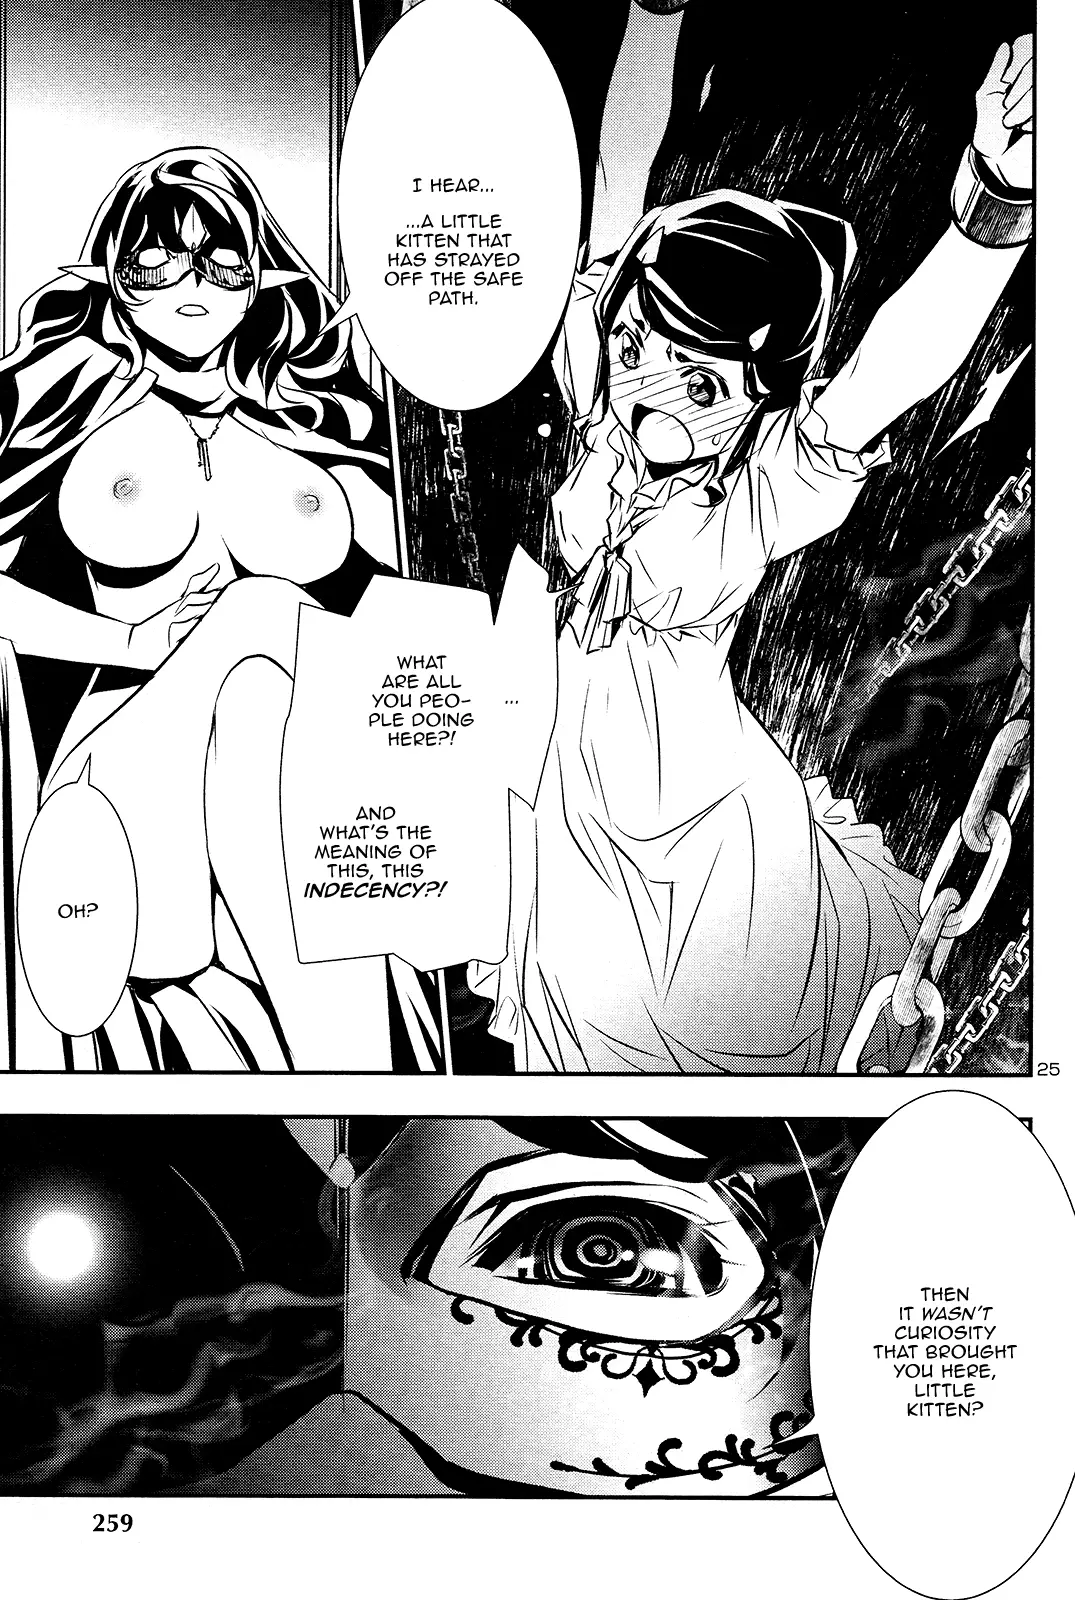 Shinju no Nectar - 35 page 25